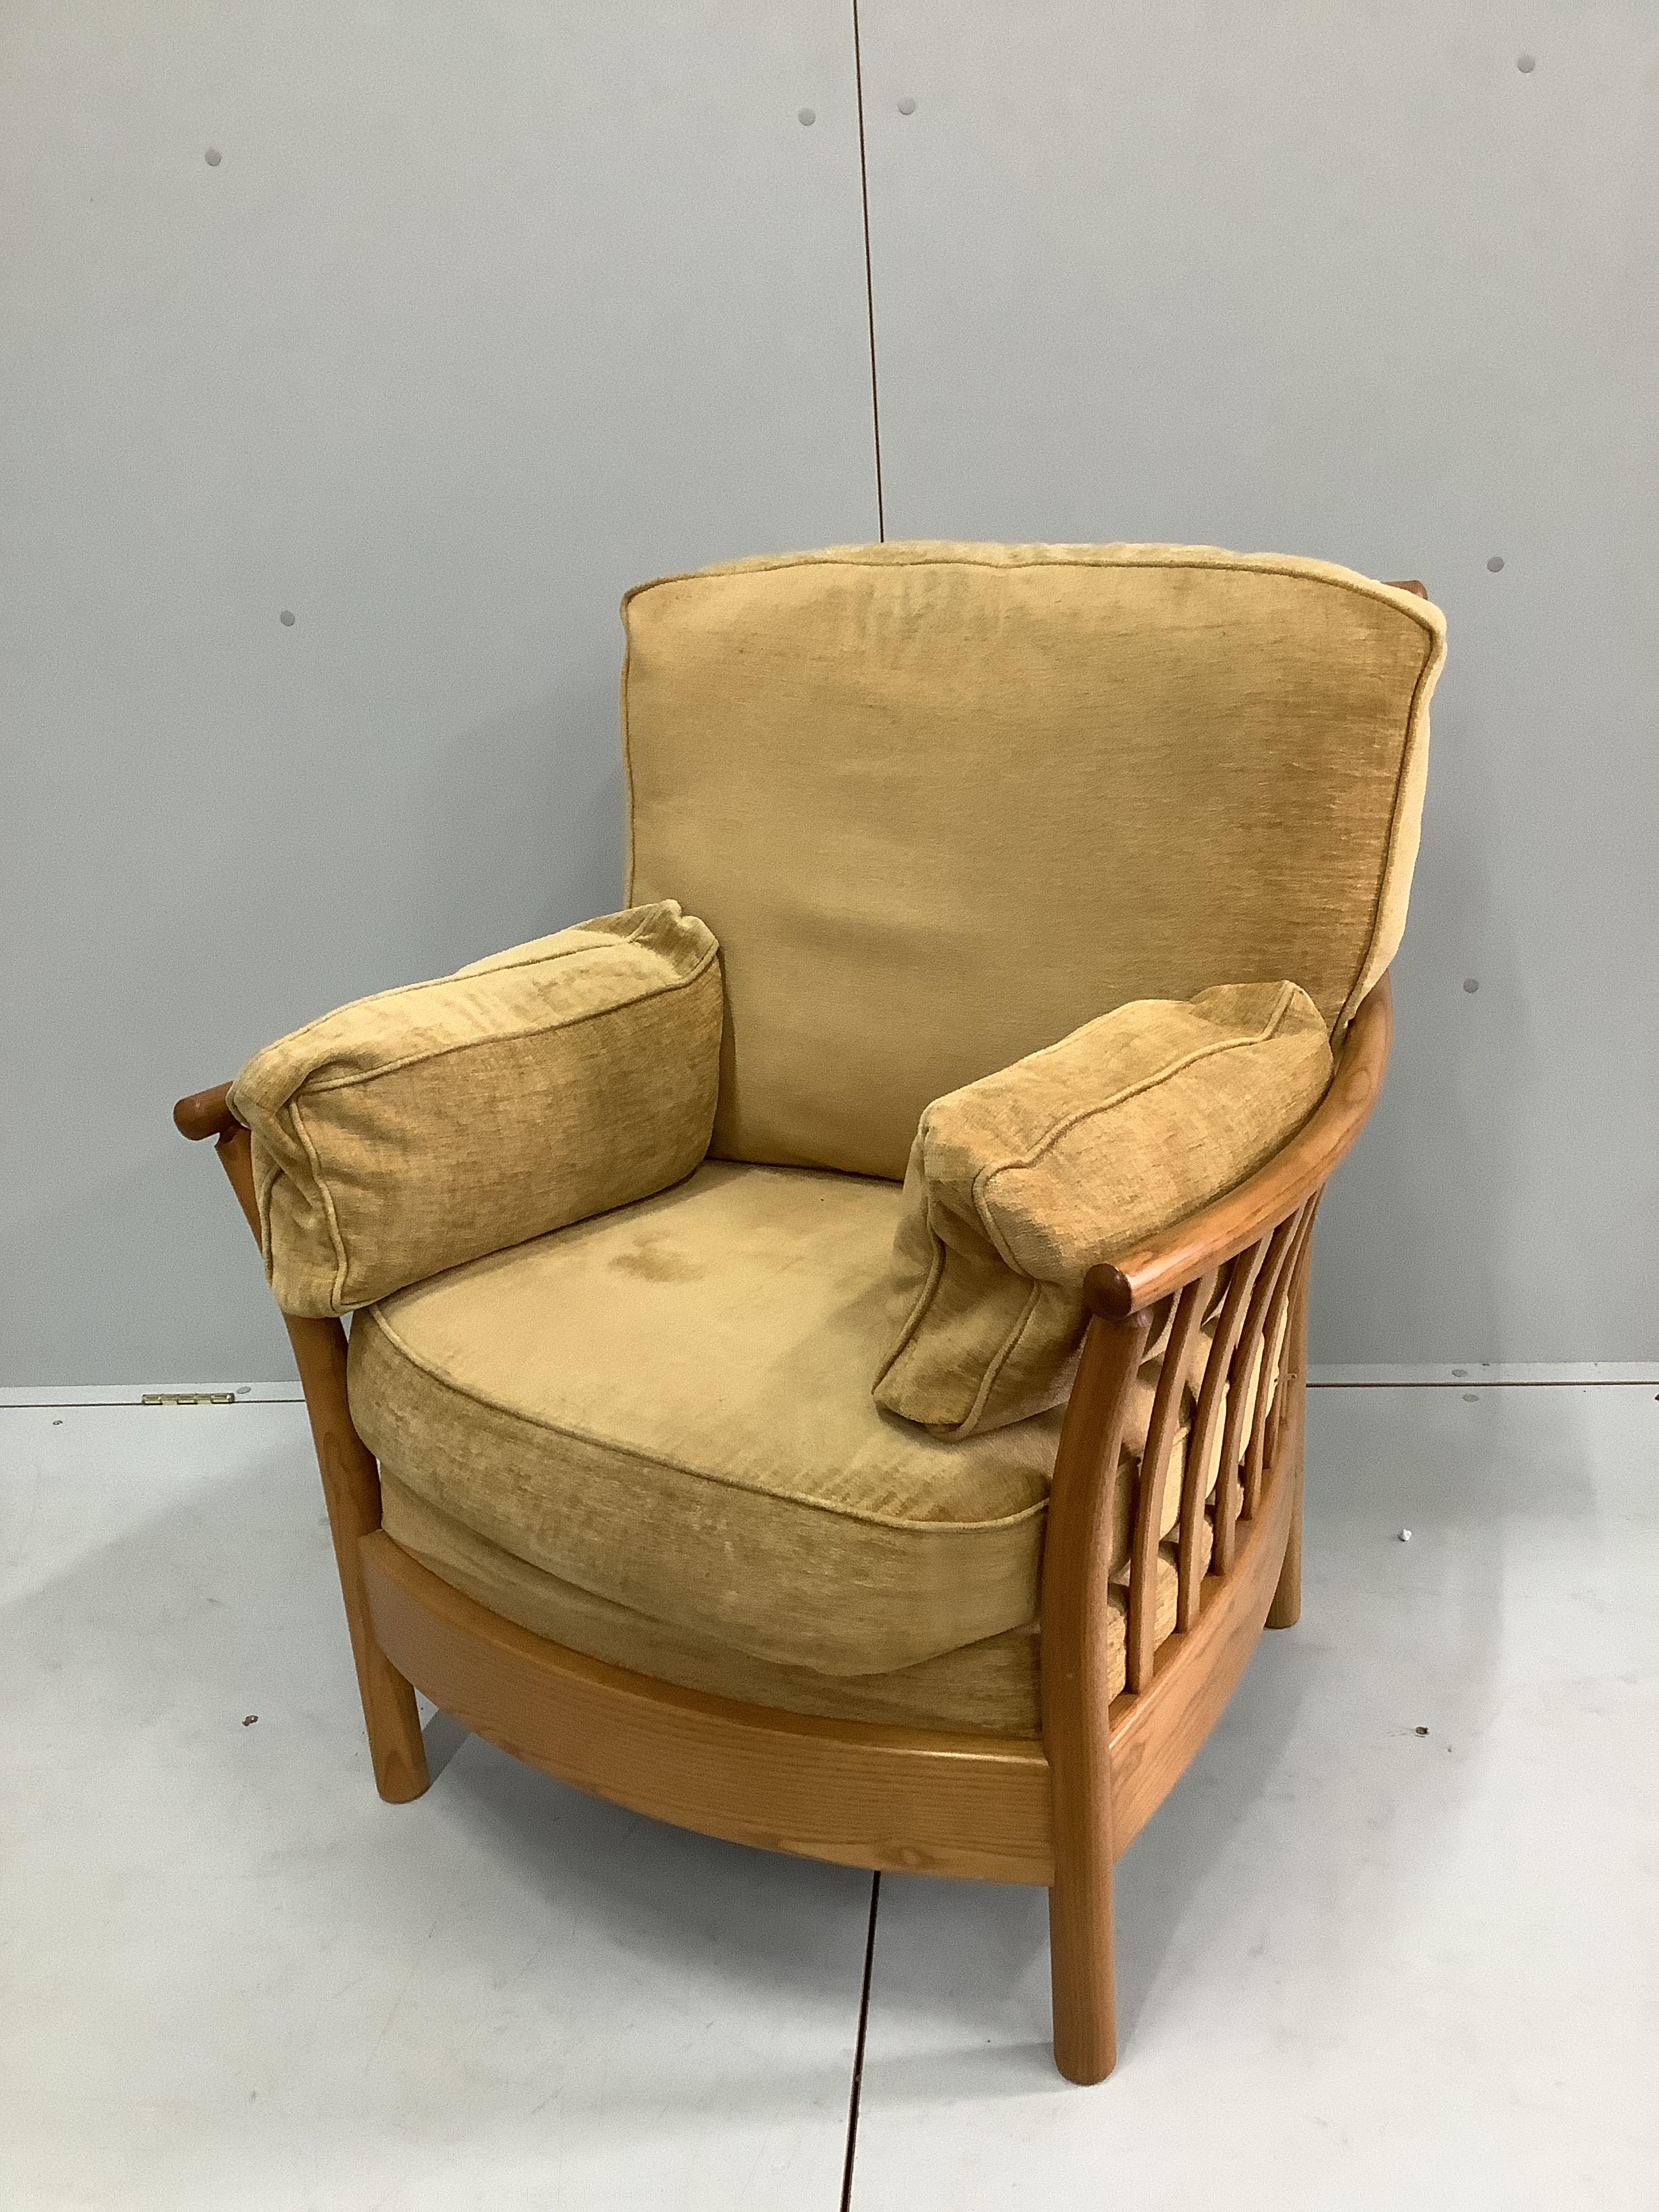 An Ercol oak armchair, width 82cm, depth 68cm, height 93cm                                                                                                                                                                  